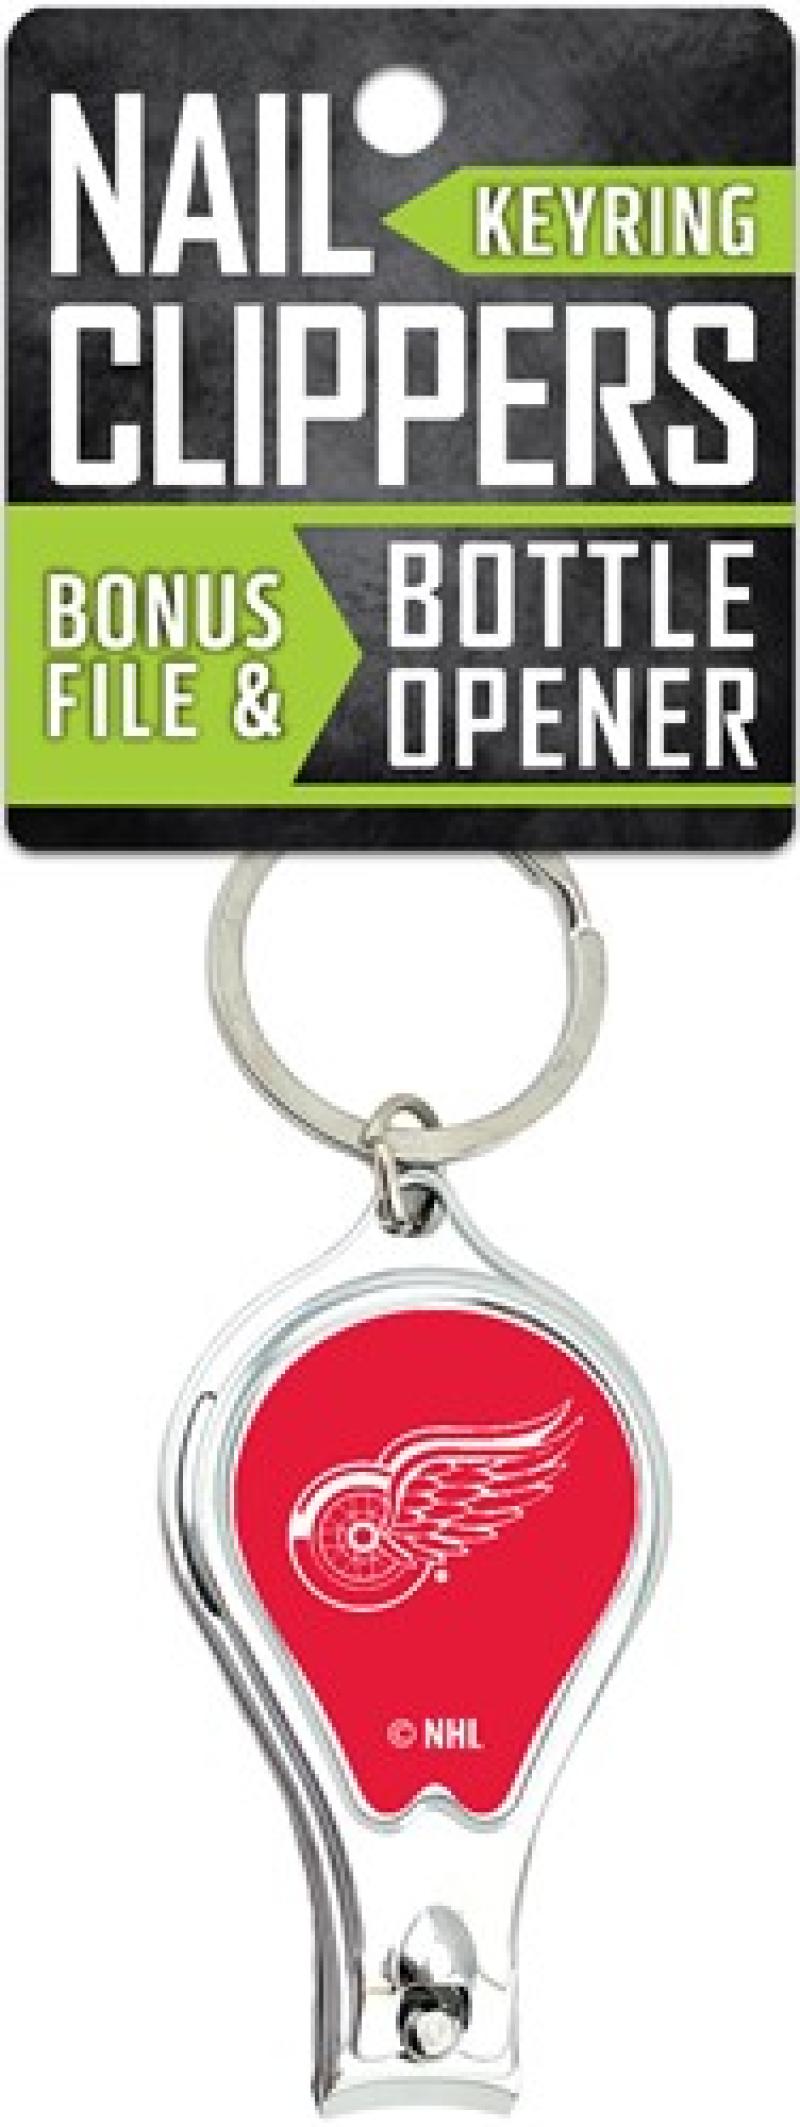 Detroit Red Wings Nail Clipper Keyring w/Bonus File & Bottle Opener Image 1